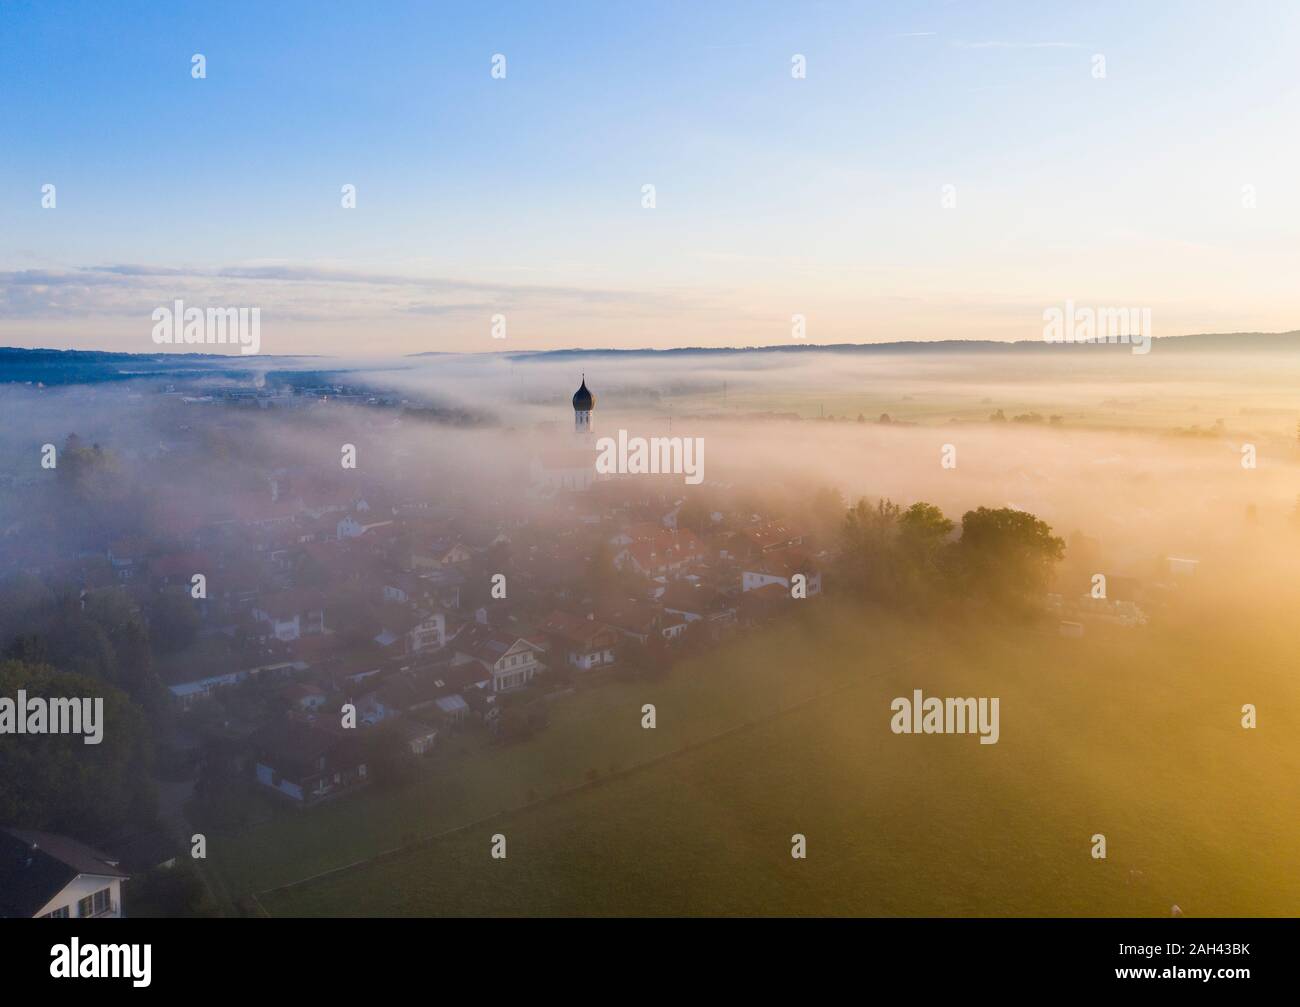 Alemania, Baviera, Geretsried, vista aérea del campo ciudad envuelta en niebla matutina Foto de stock